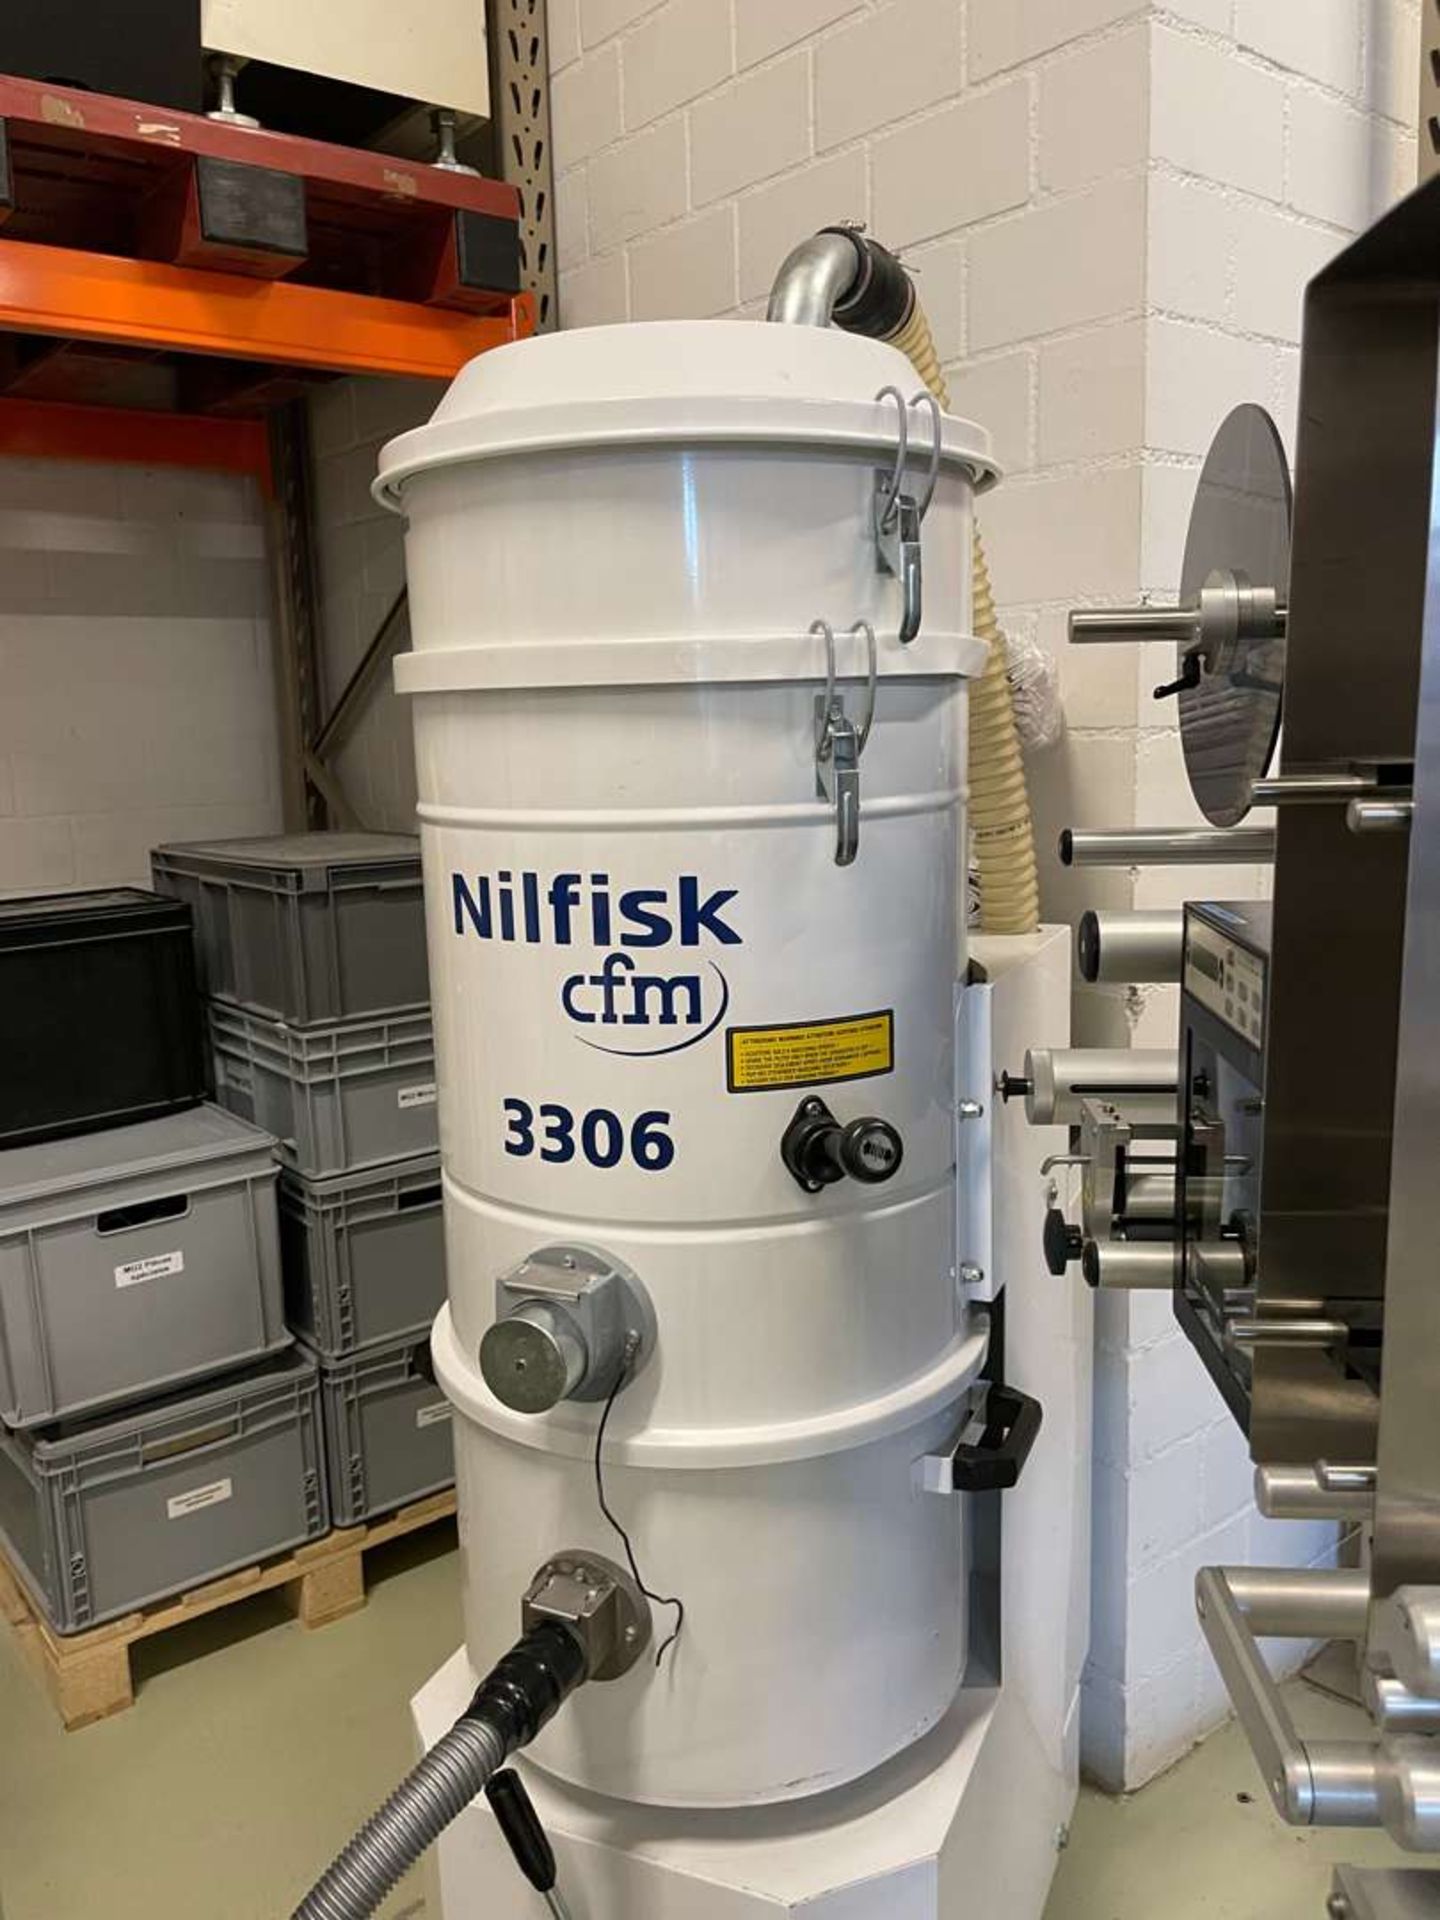 Nilfisk 3306 Industrial Vaccum Cleaner - Image 2 of 2